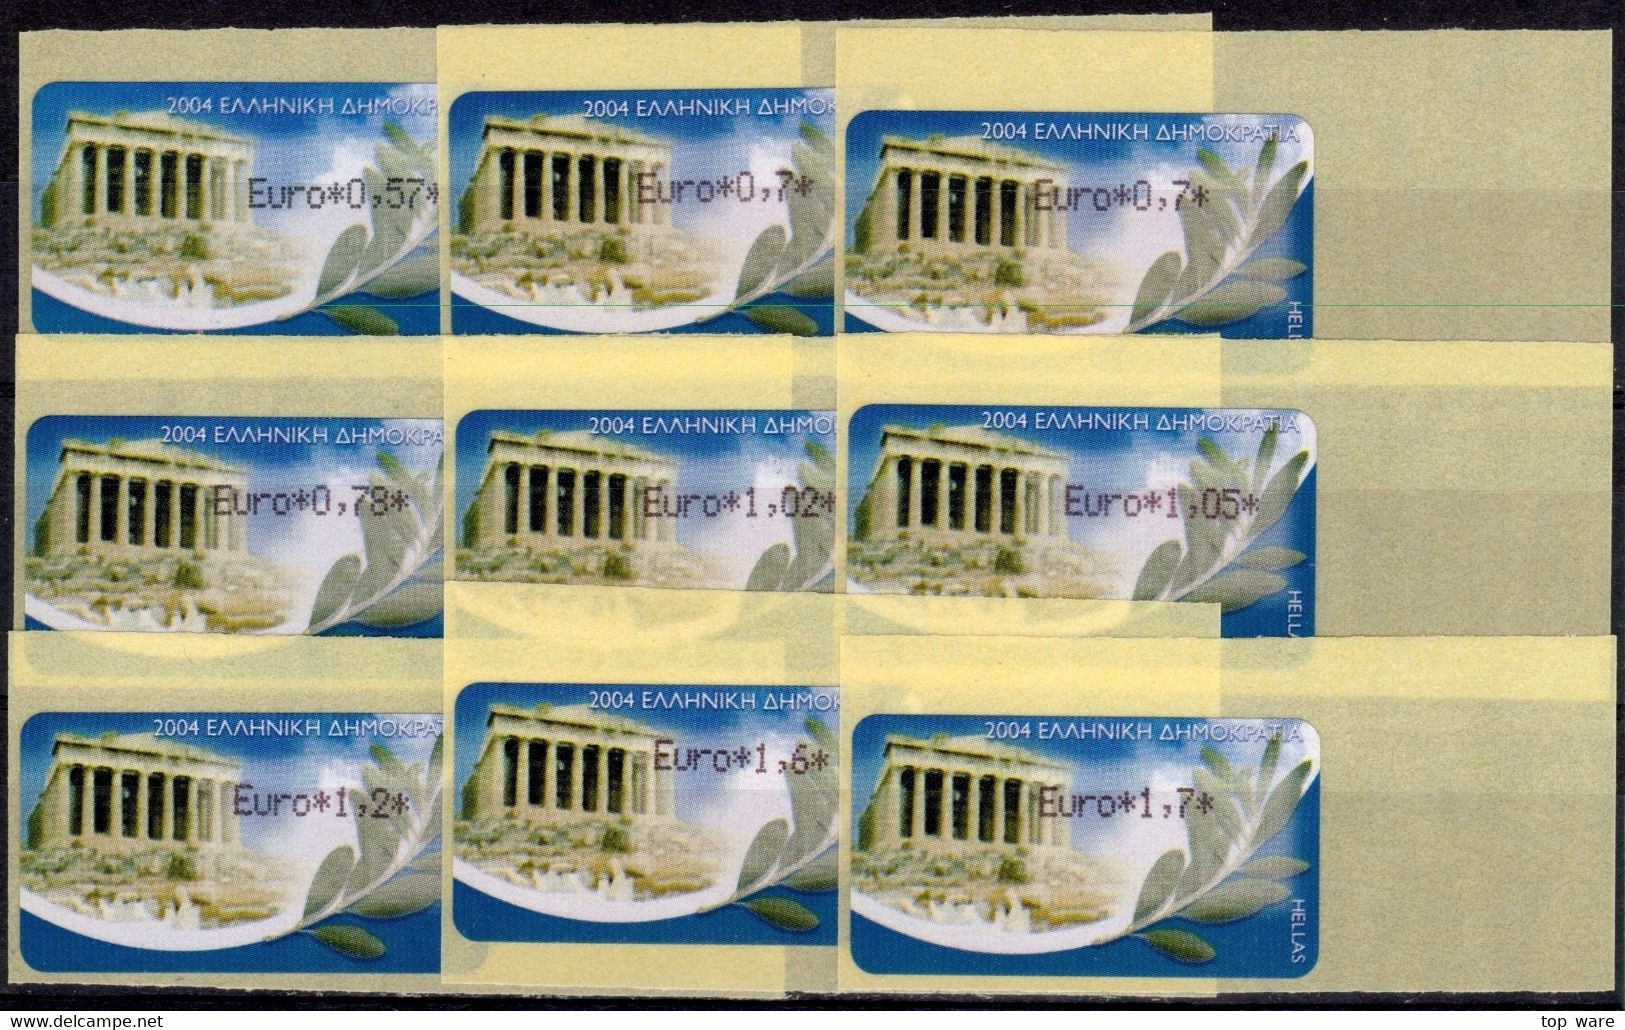 Greece Griechenland HELLAS ATM 22 Parthenon Reprint Paper 2008 * Set 18 Values MNH * Frama Etiquetas Automatenmarken - Automatenmarken [ATM]